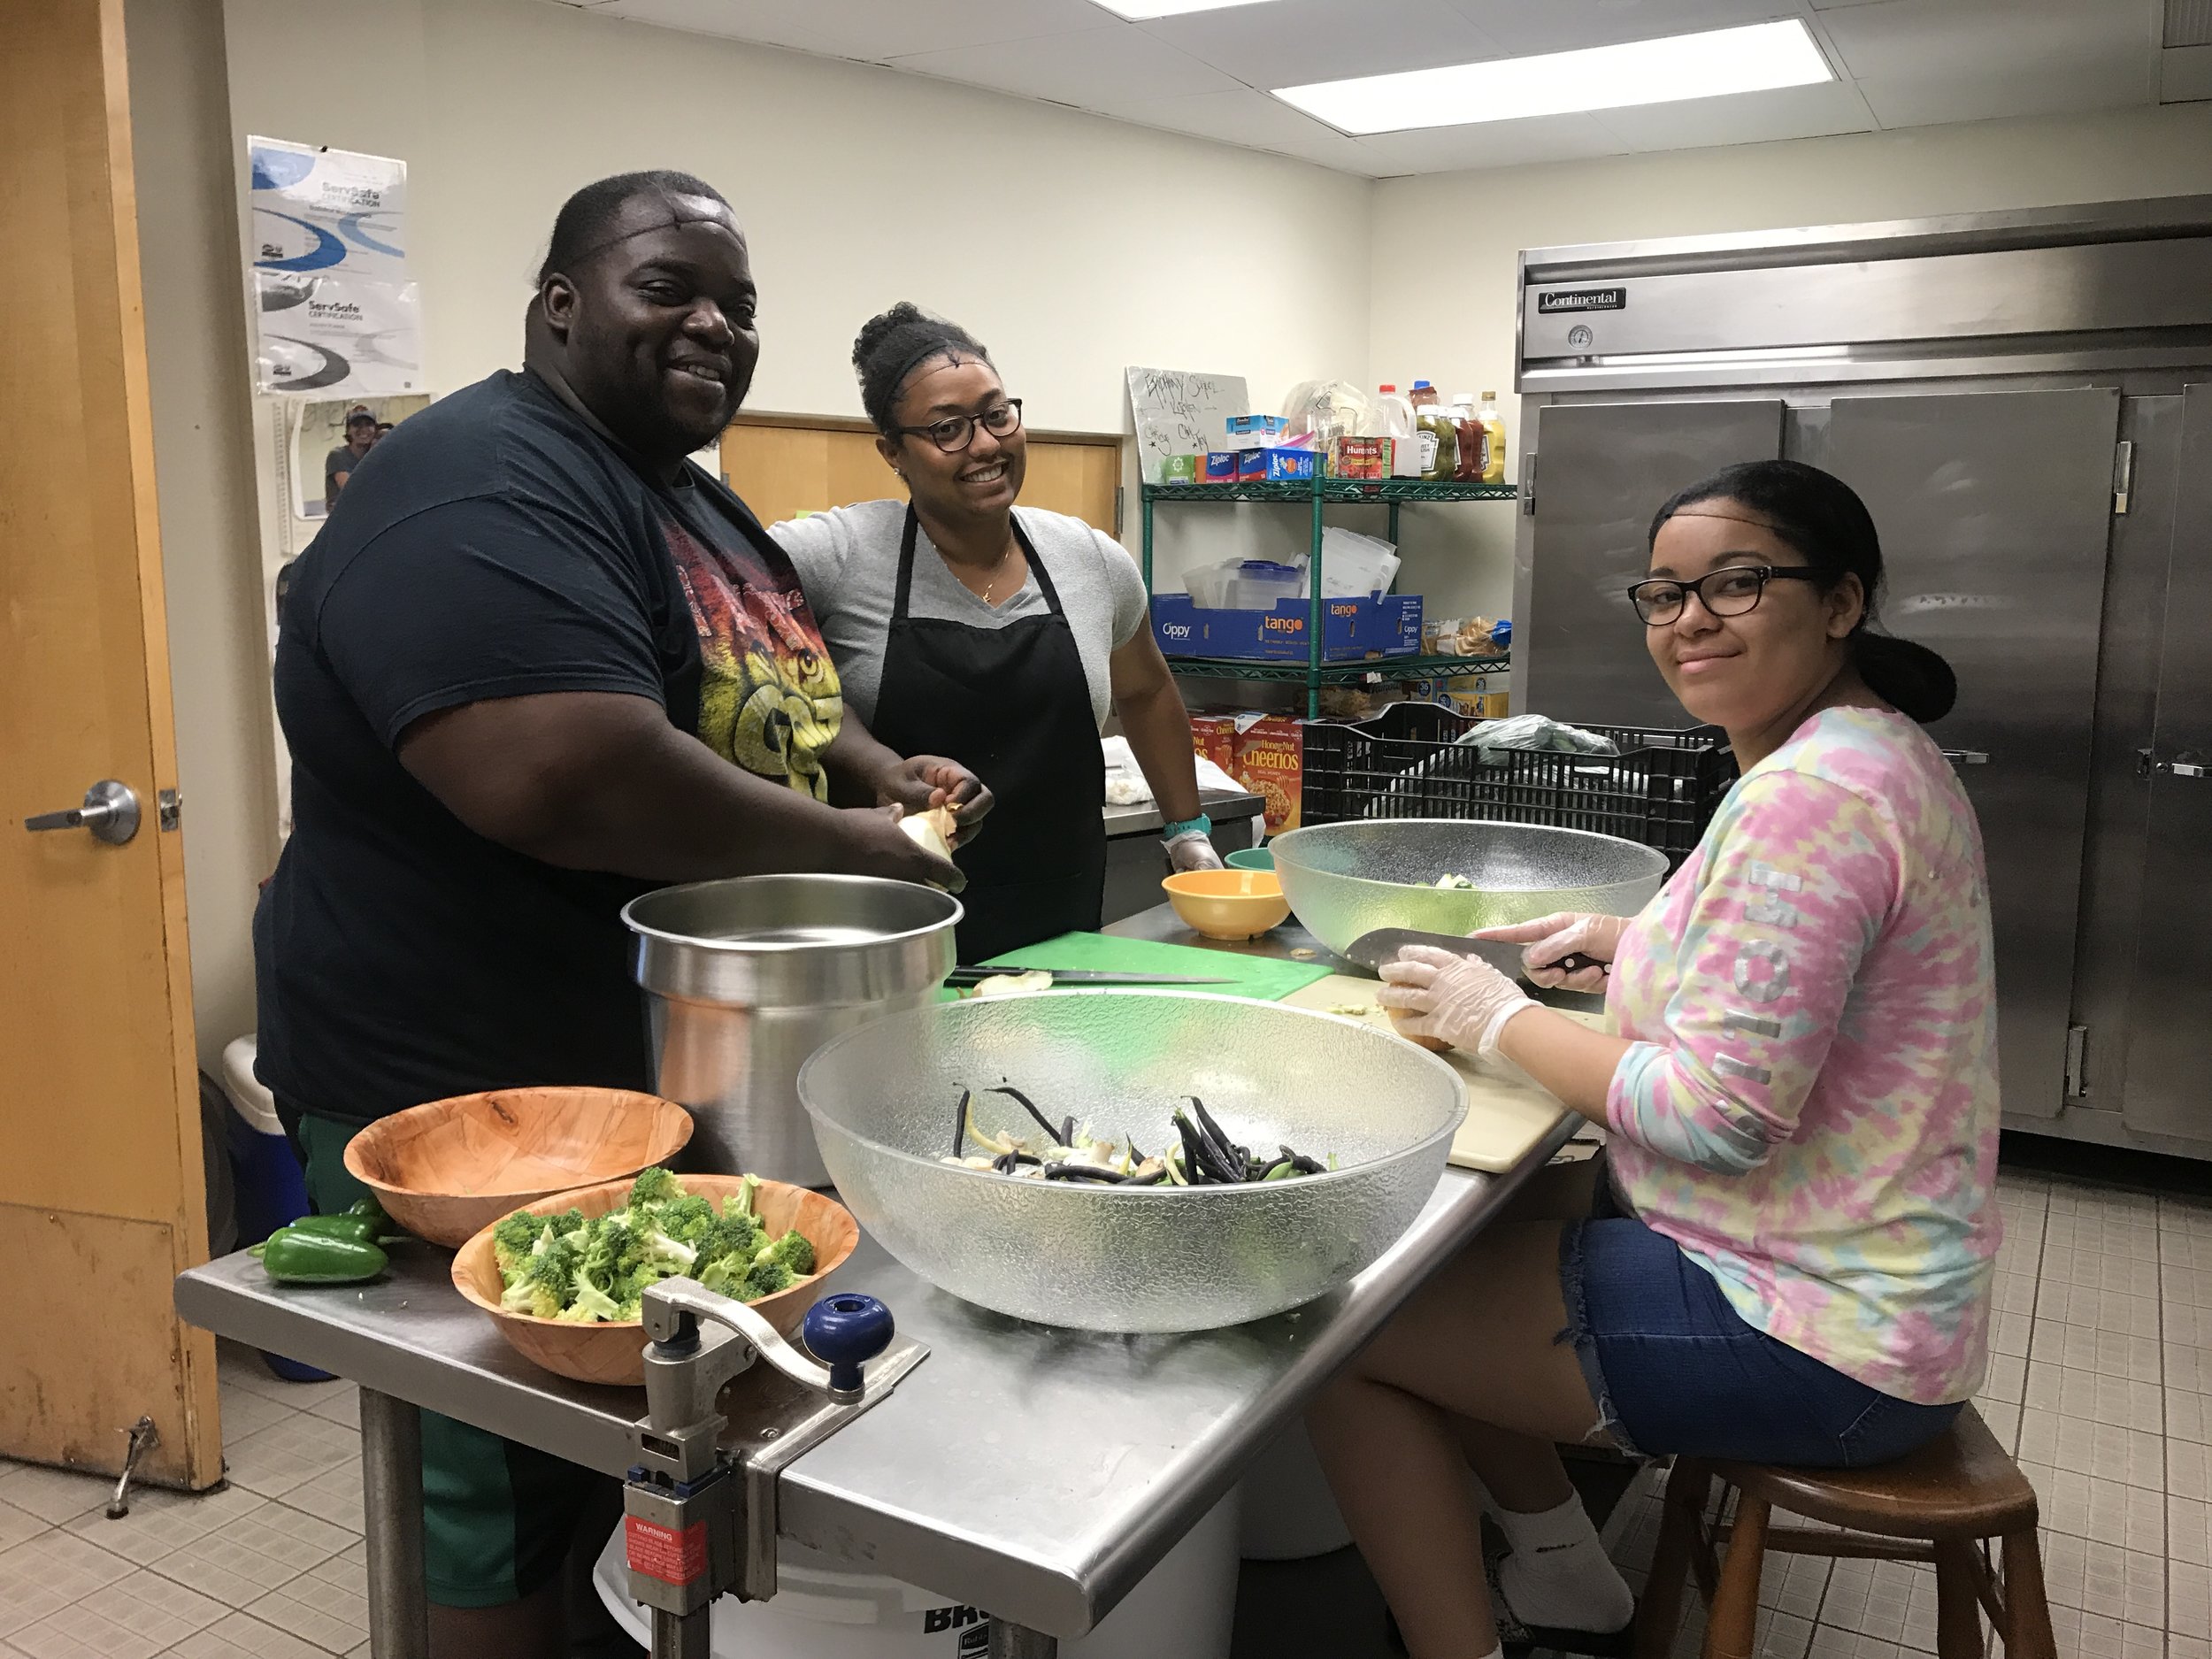   Chef Tey, Sabrina ‘08 and Jorelys ‘17 preparing the ingredients.  